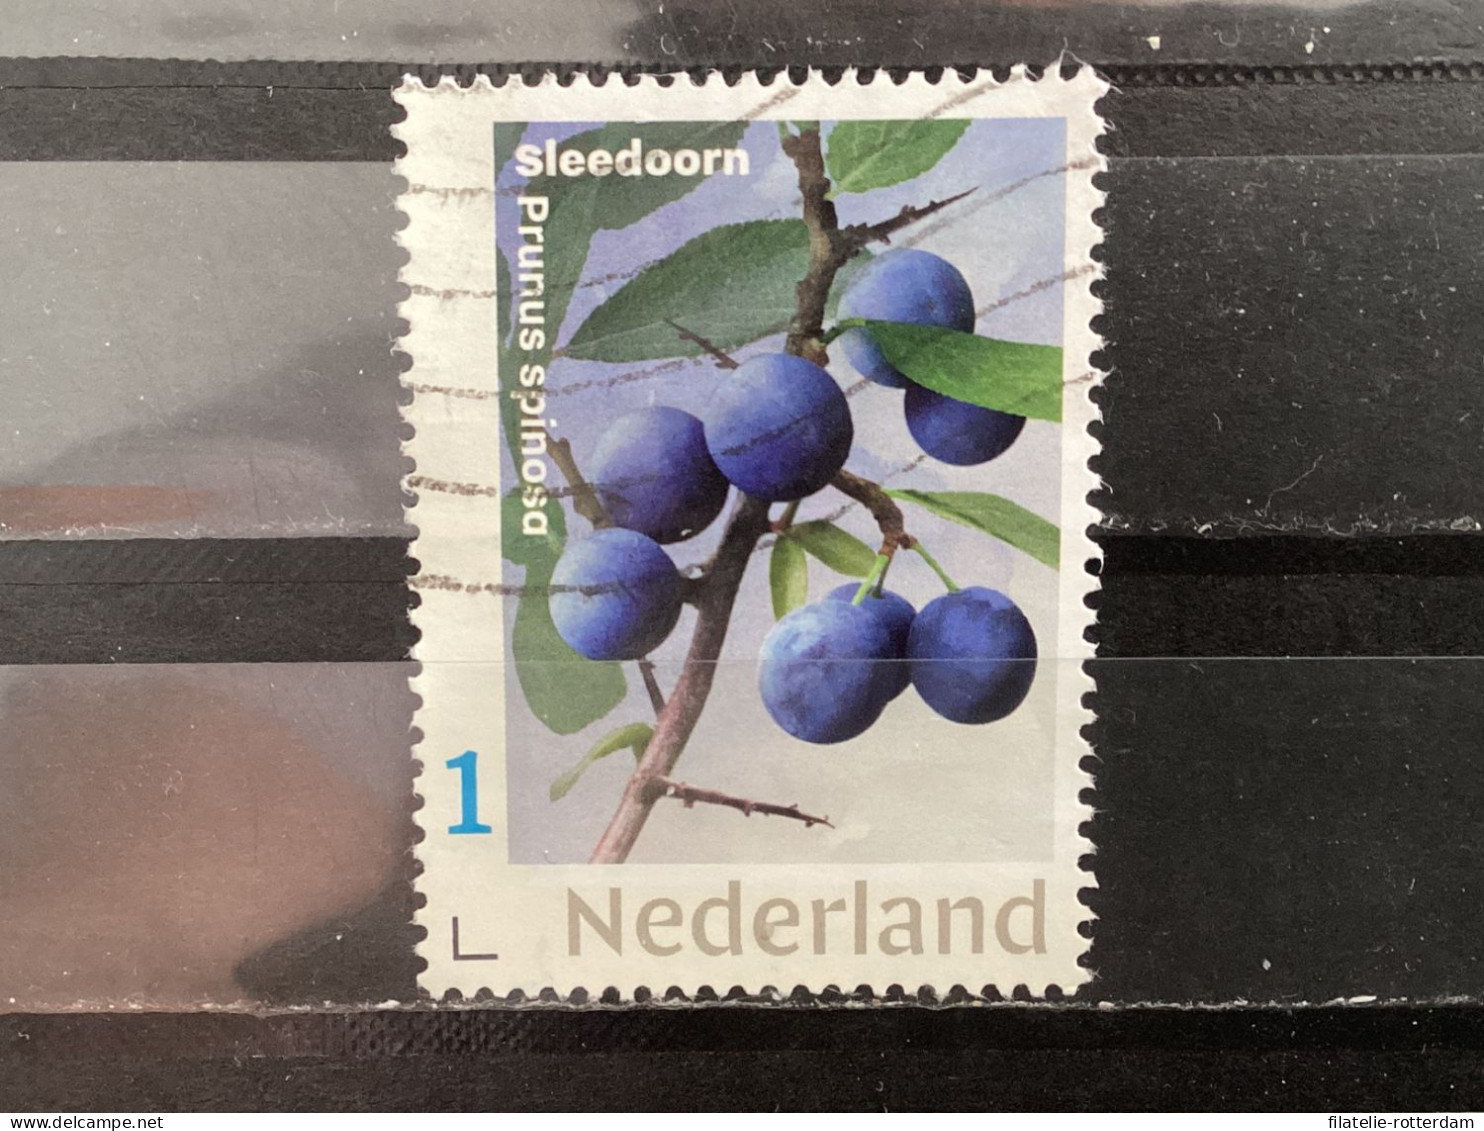 The Netherlands / Nederland - Fruit, Sleedoorn 2021 - Oblitérés